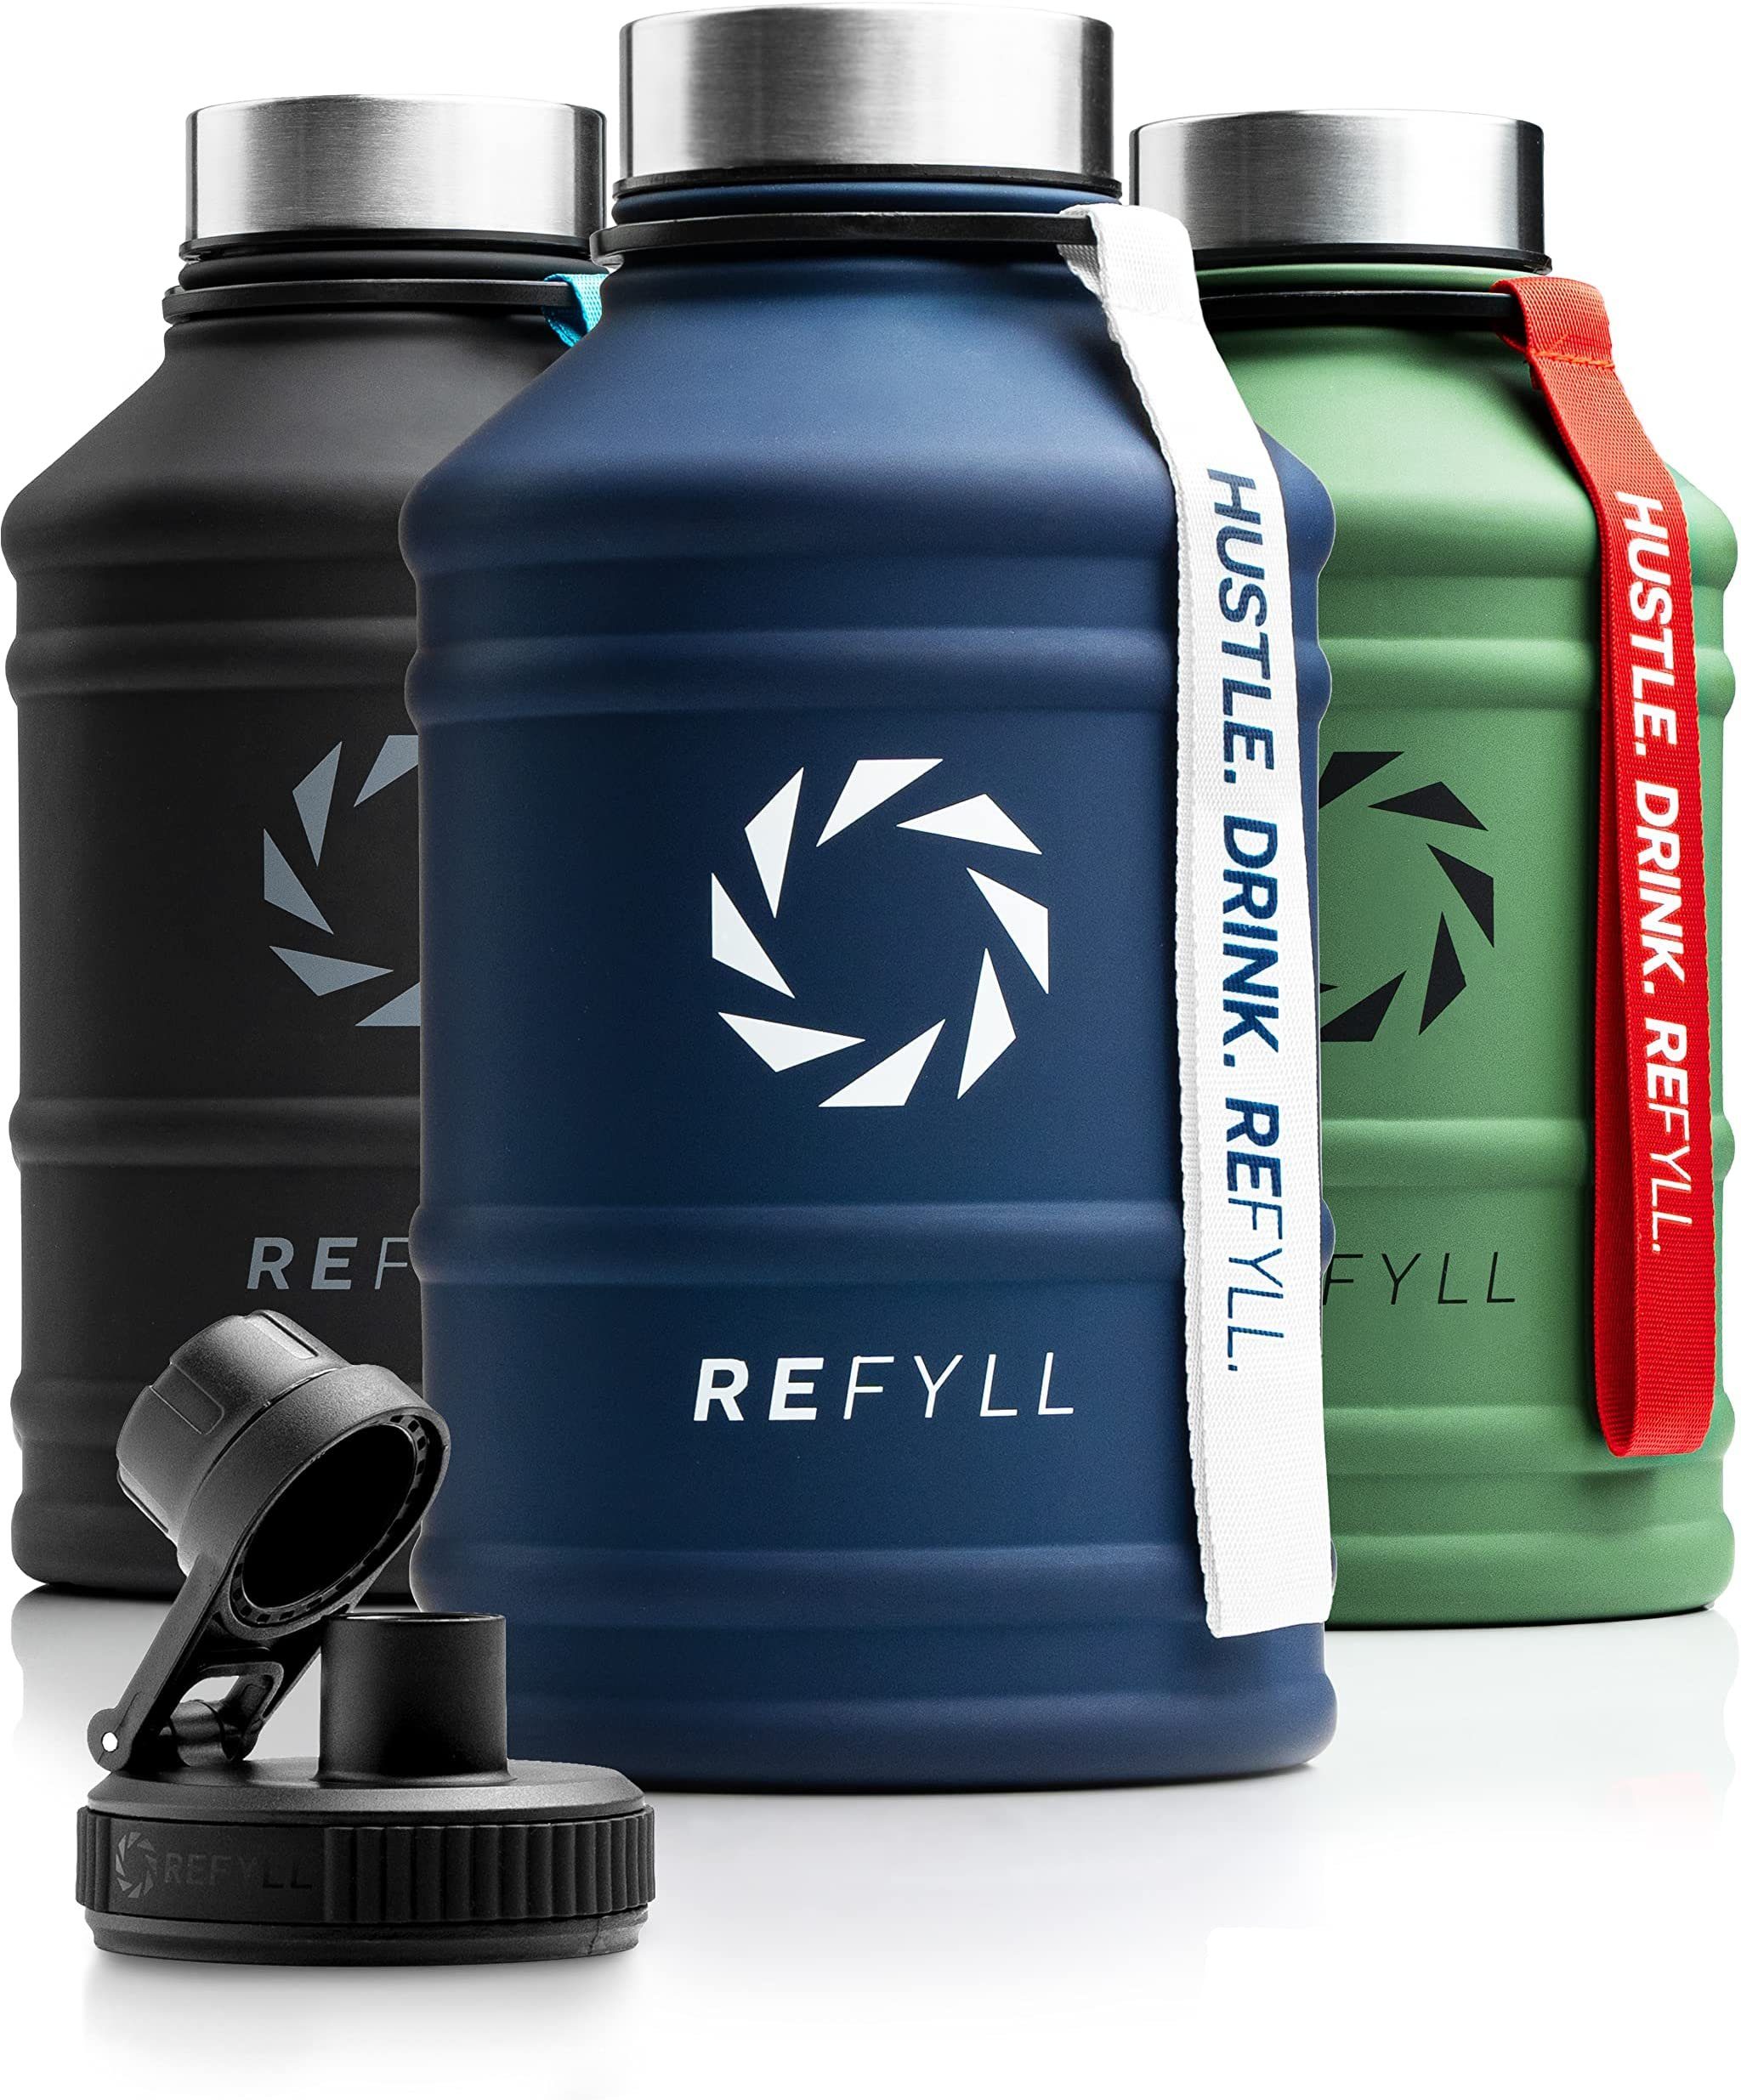 REFYLL Trinkflasche Edelstahl Trinkflasche Hero 1,3L und 2,2L, Auslaufsicher, robust, Fitness Trinkflasche für Sport, Gym, Water Jug auslaufsicher Navy Blue 1,3 L